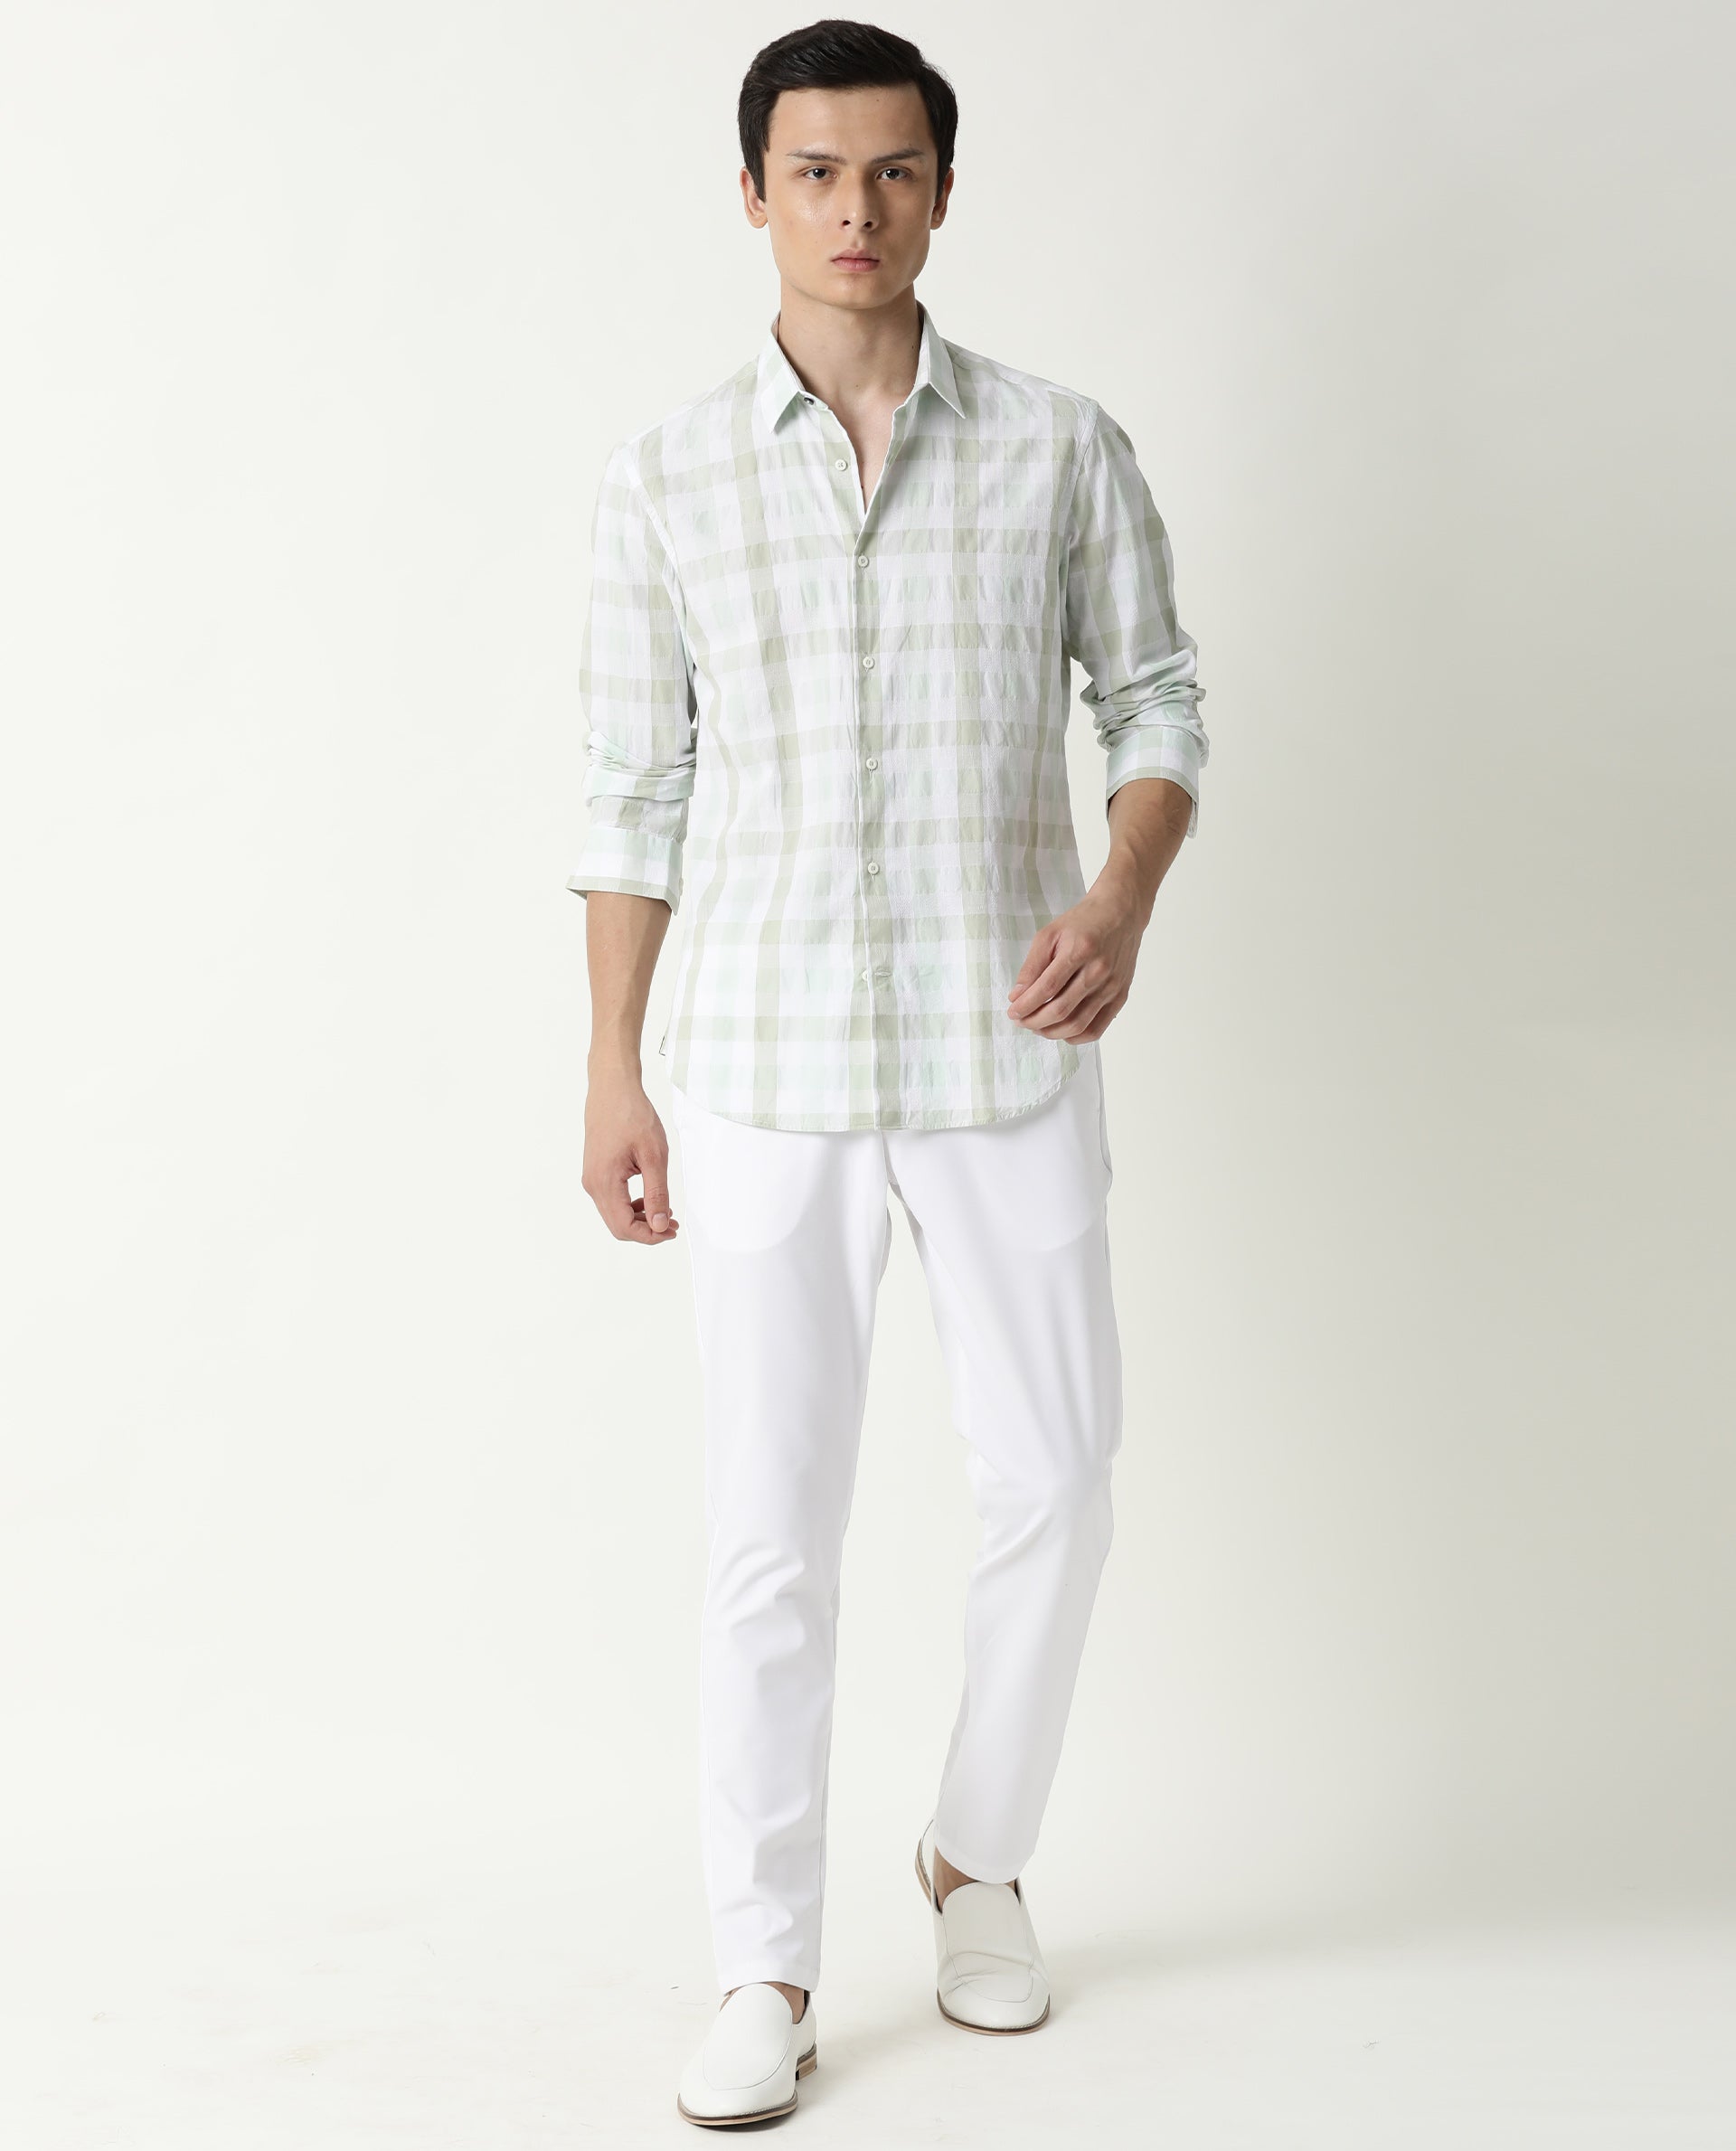 Best Green Shirt Combination Pants Ideas for Men  Beyoung Blog